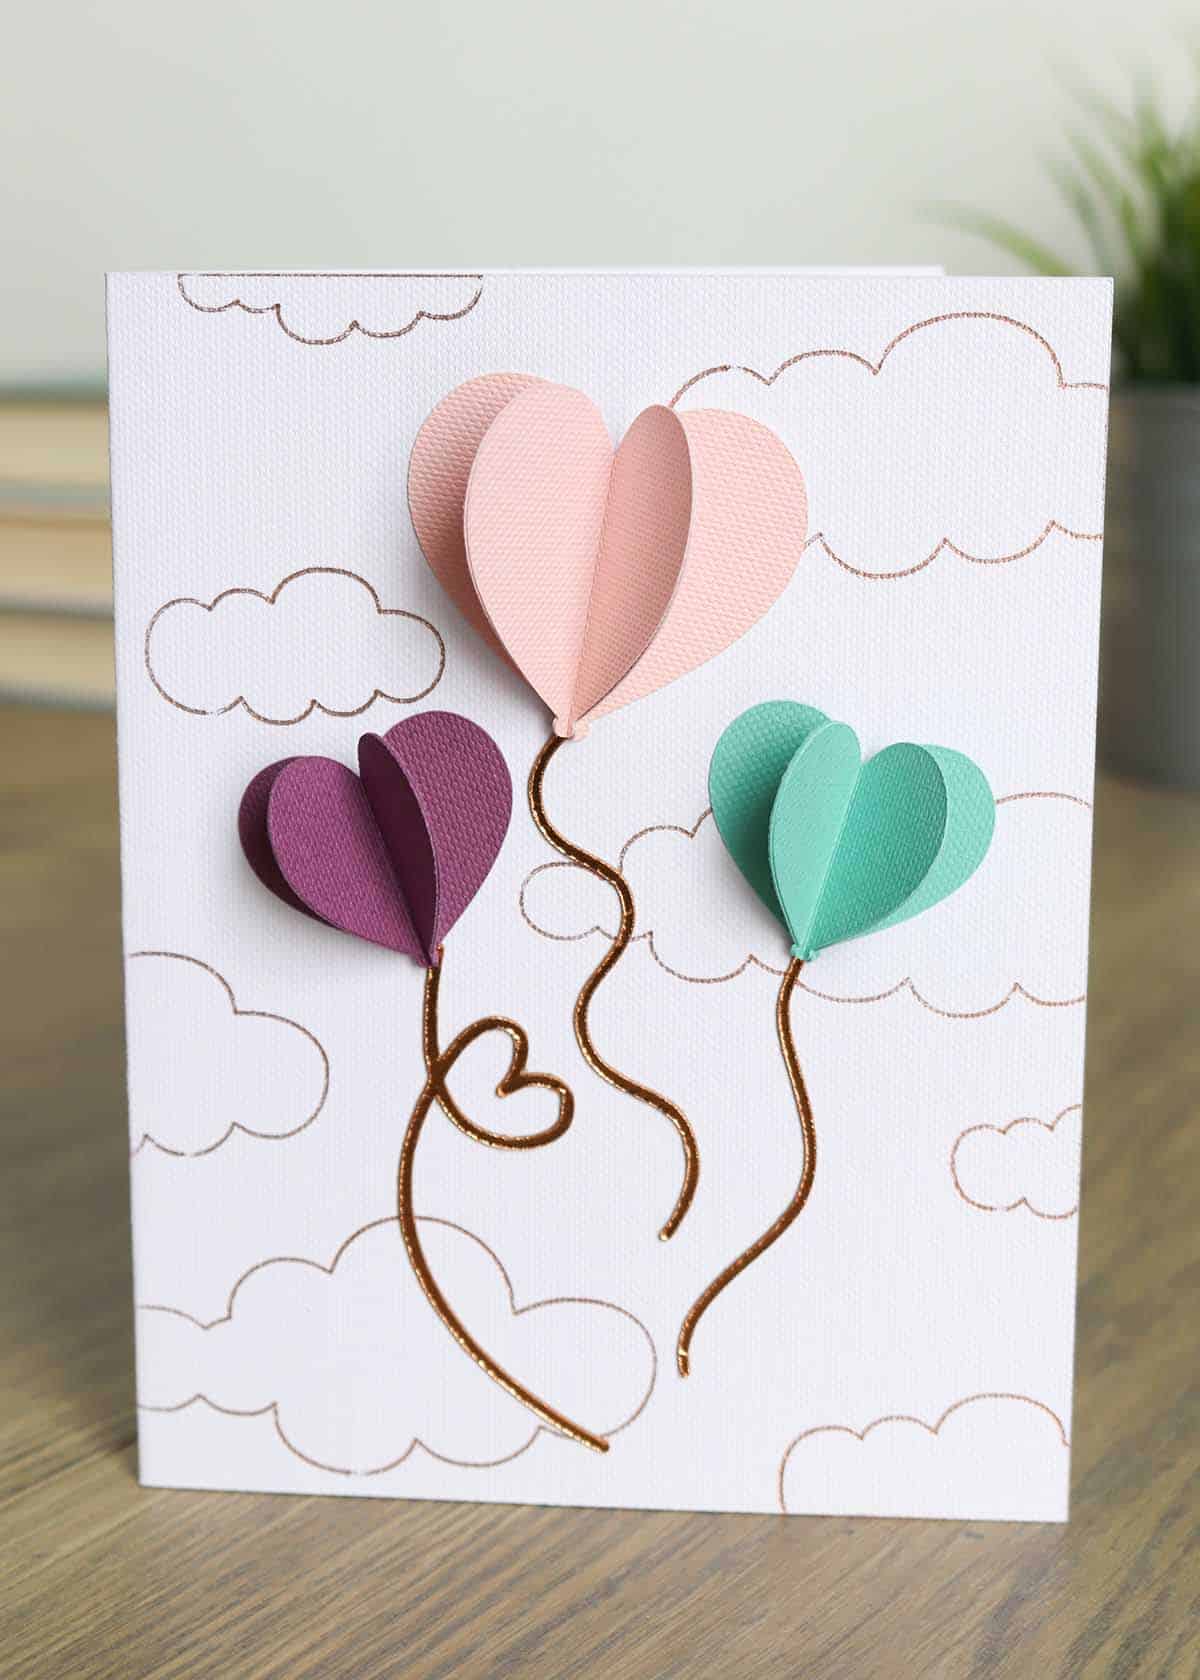 cricut valentines day card ideas: 3D heart balloons Cricut card